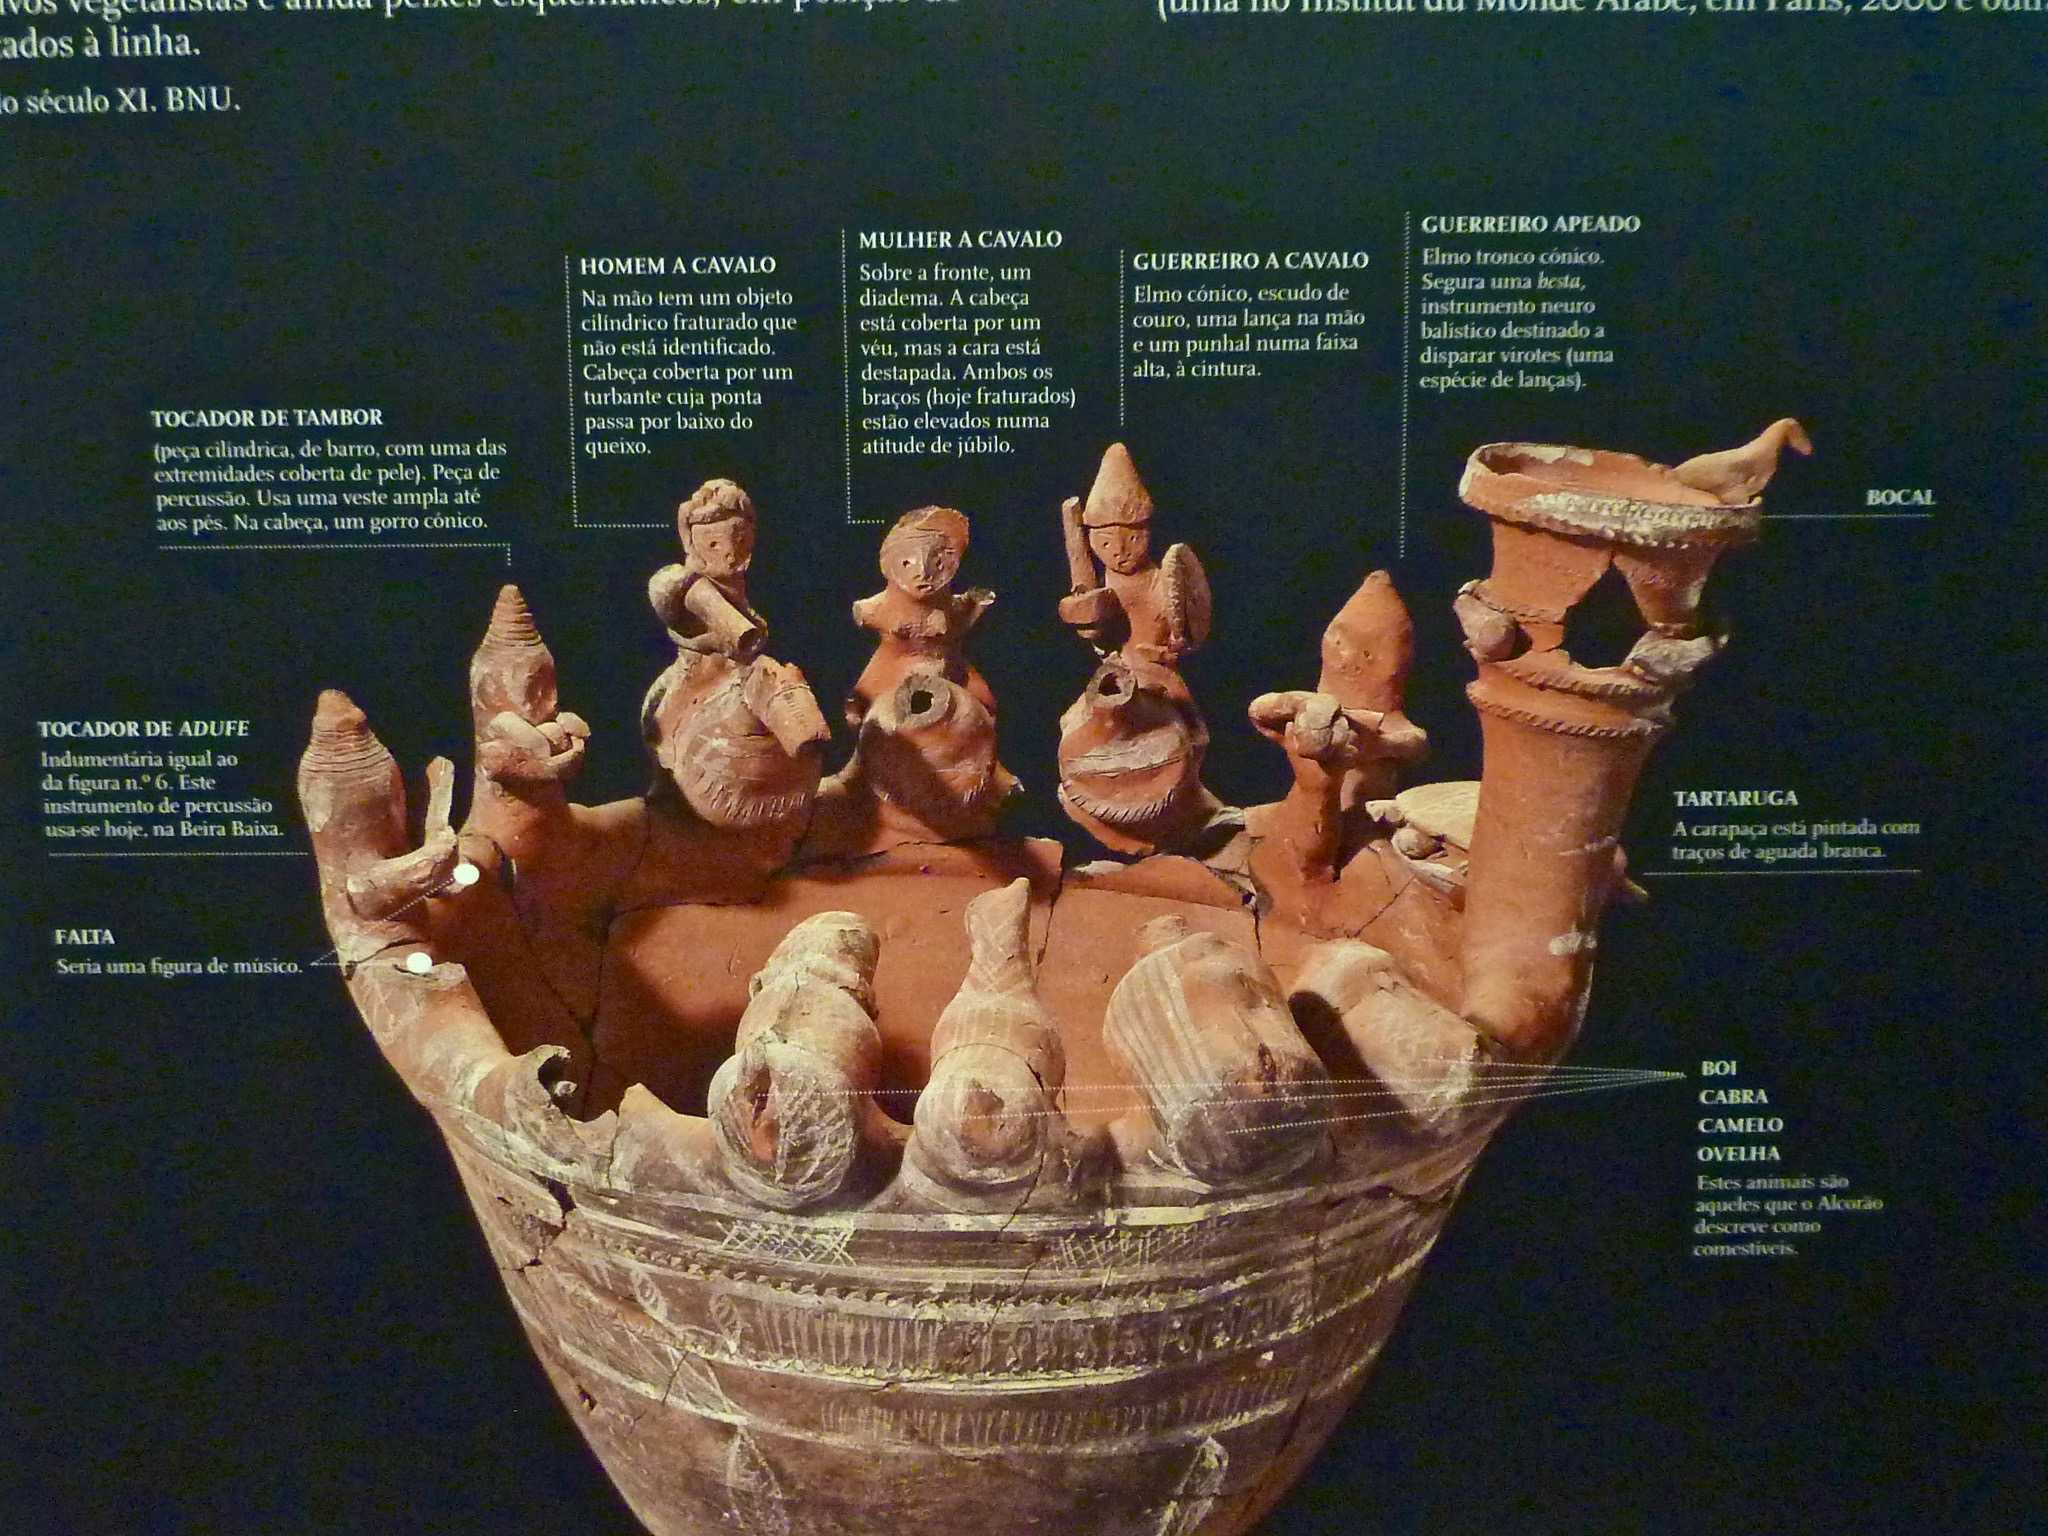 The Tavira Vase 